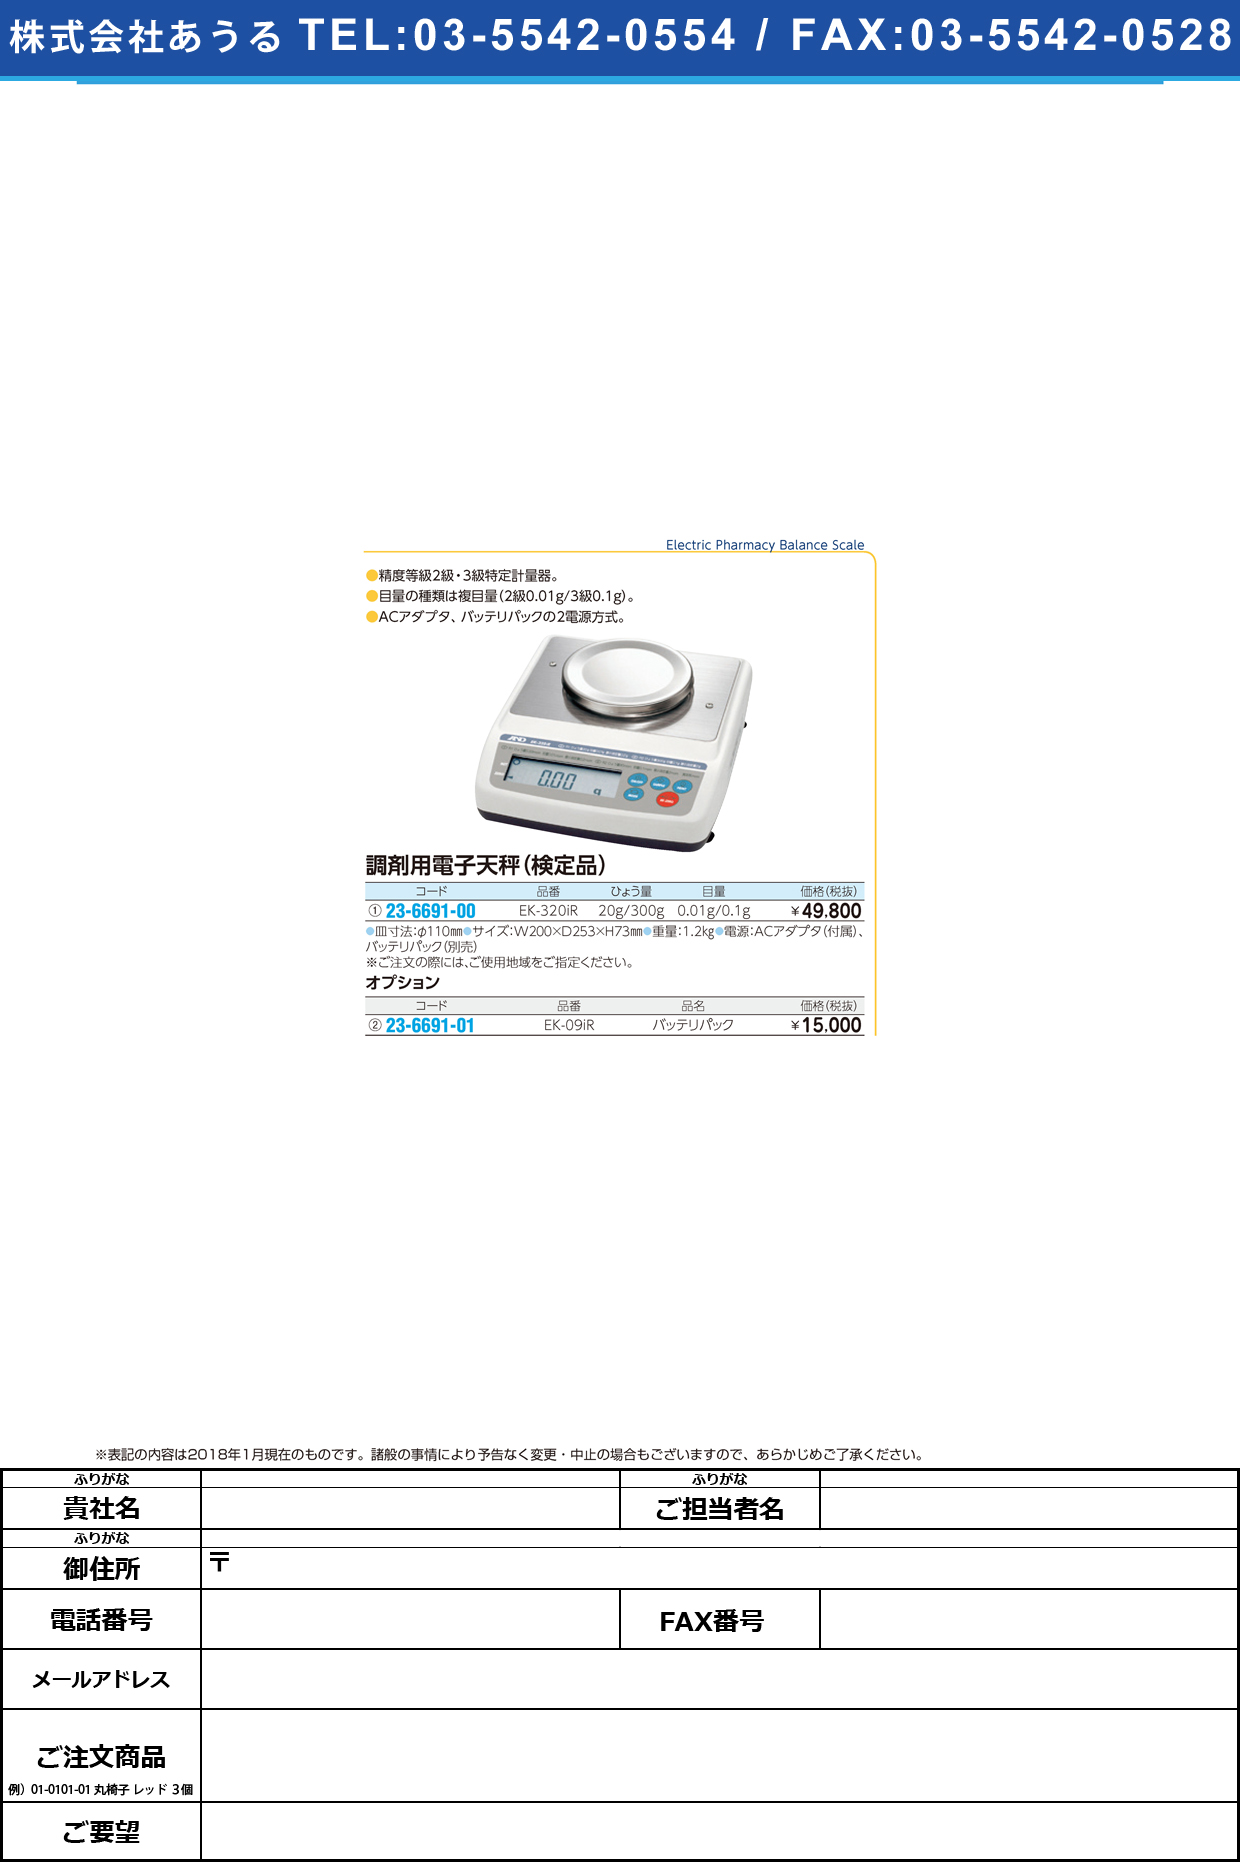 (23-6691-01)電子天秤用バッテリパック EK-09IR ﾃﾞﾝｼﾃﾝﾋﾞﾝﾖｳﾊﾞｯﾃﾘﾊﾟｯｸ【1個単位】【2019年カタログ商品】